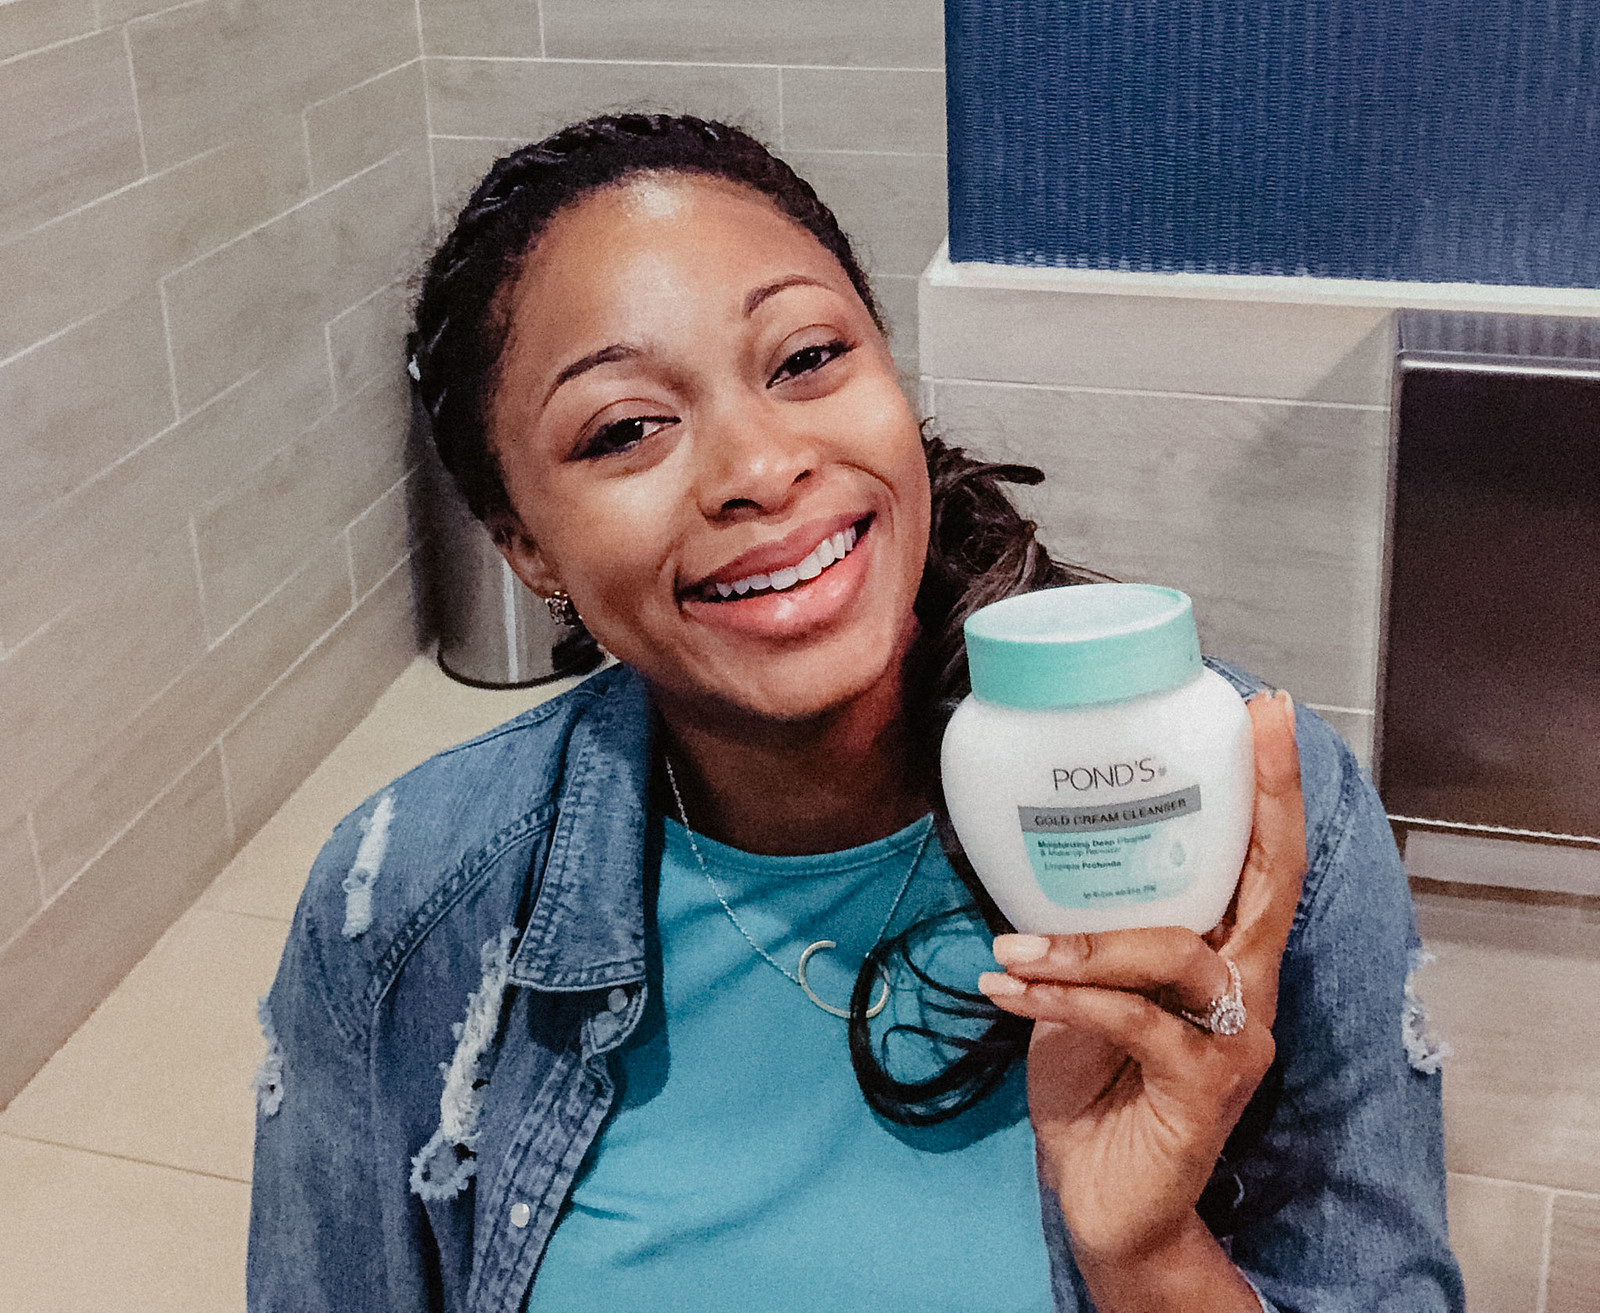 POND'S Cold Cream Cleanser, Dallas skincare blogger